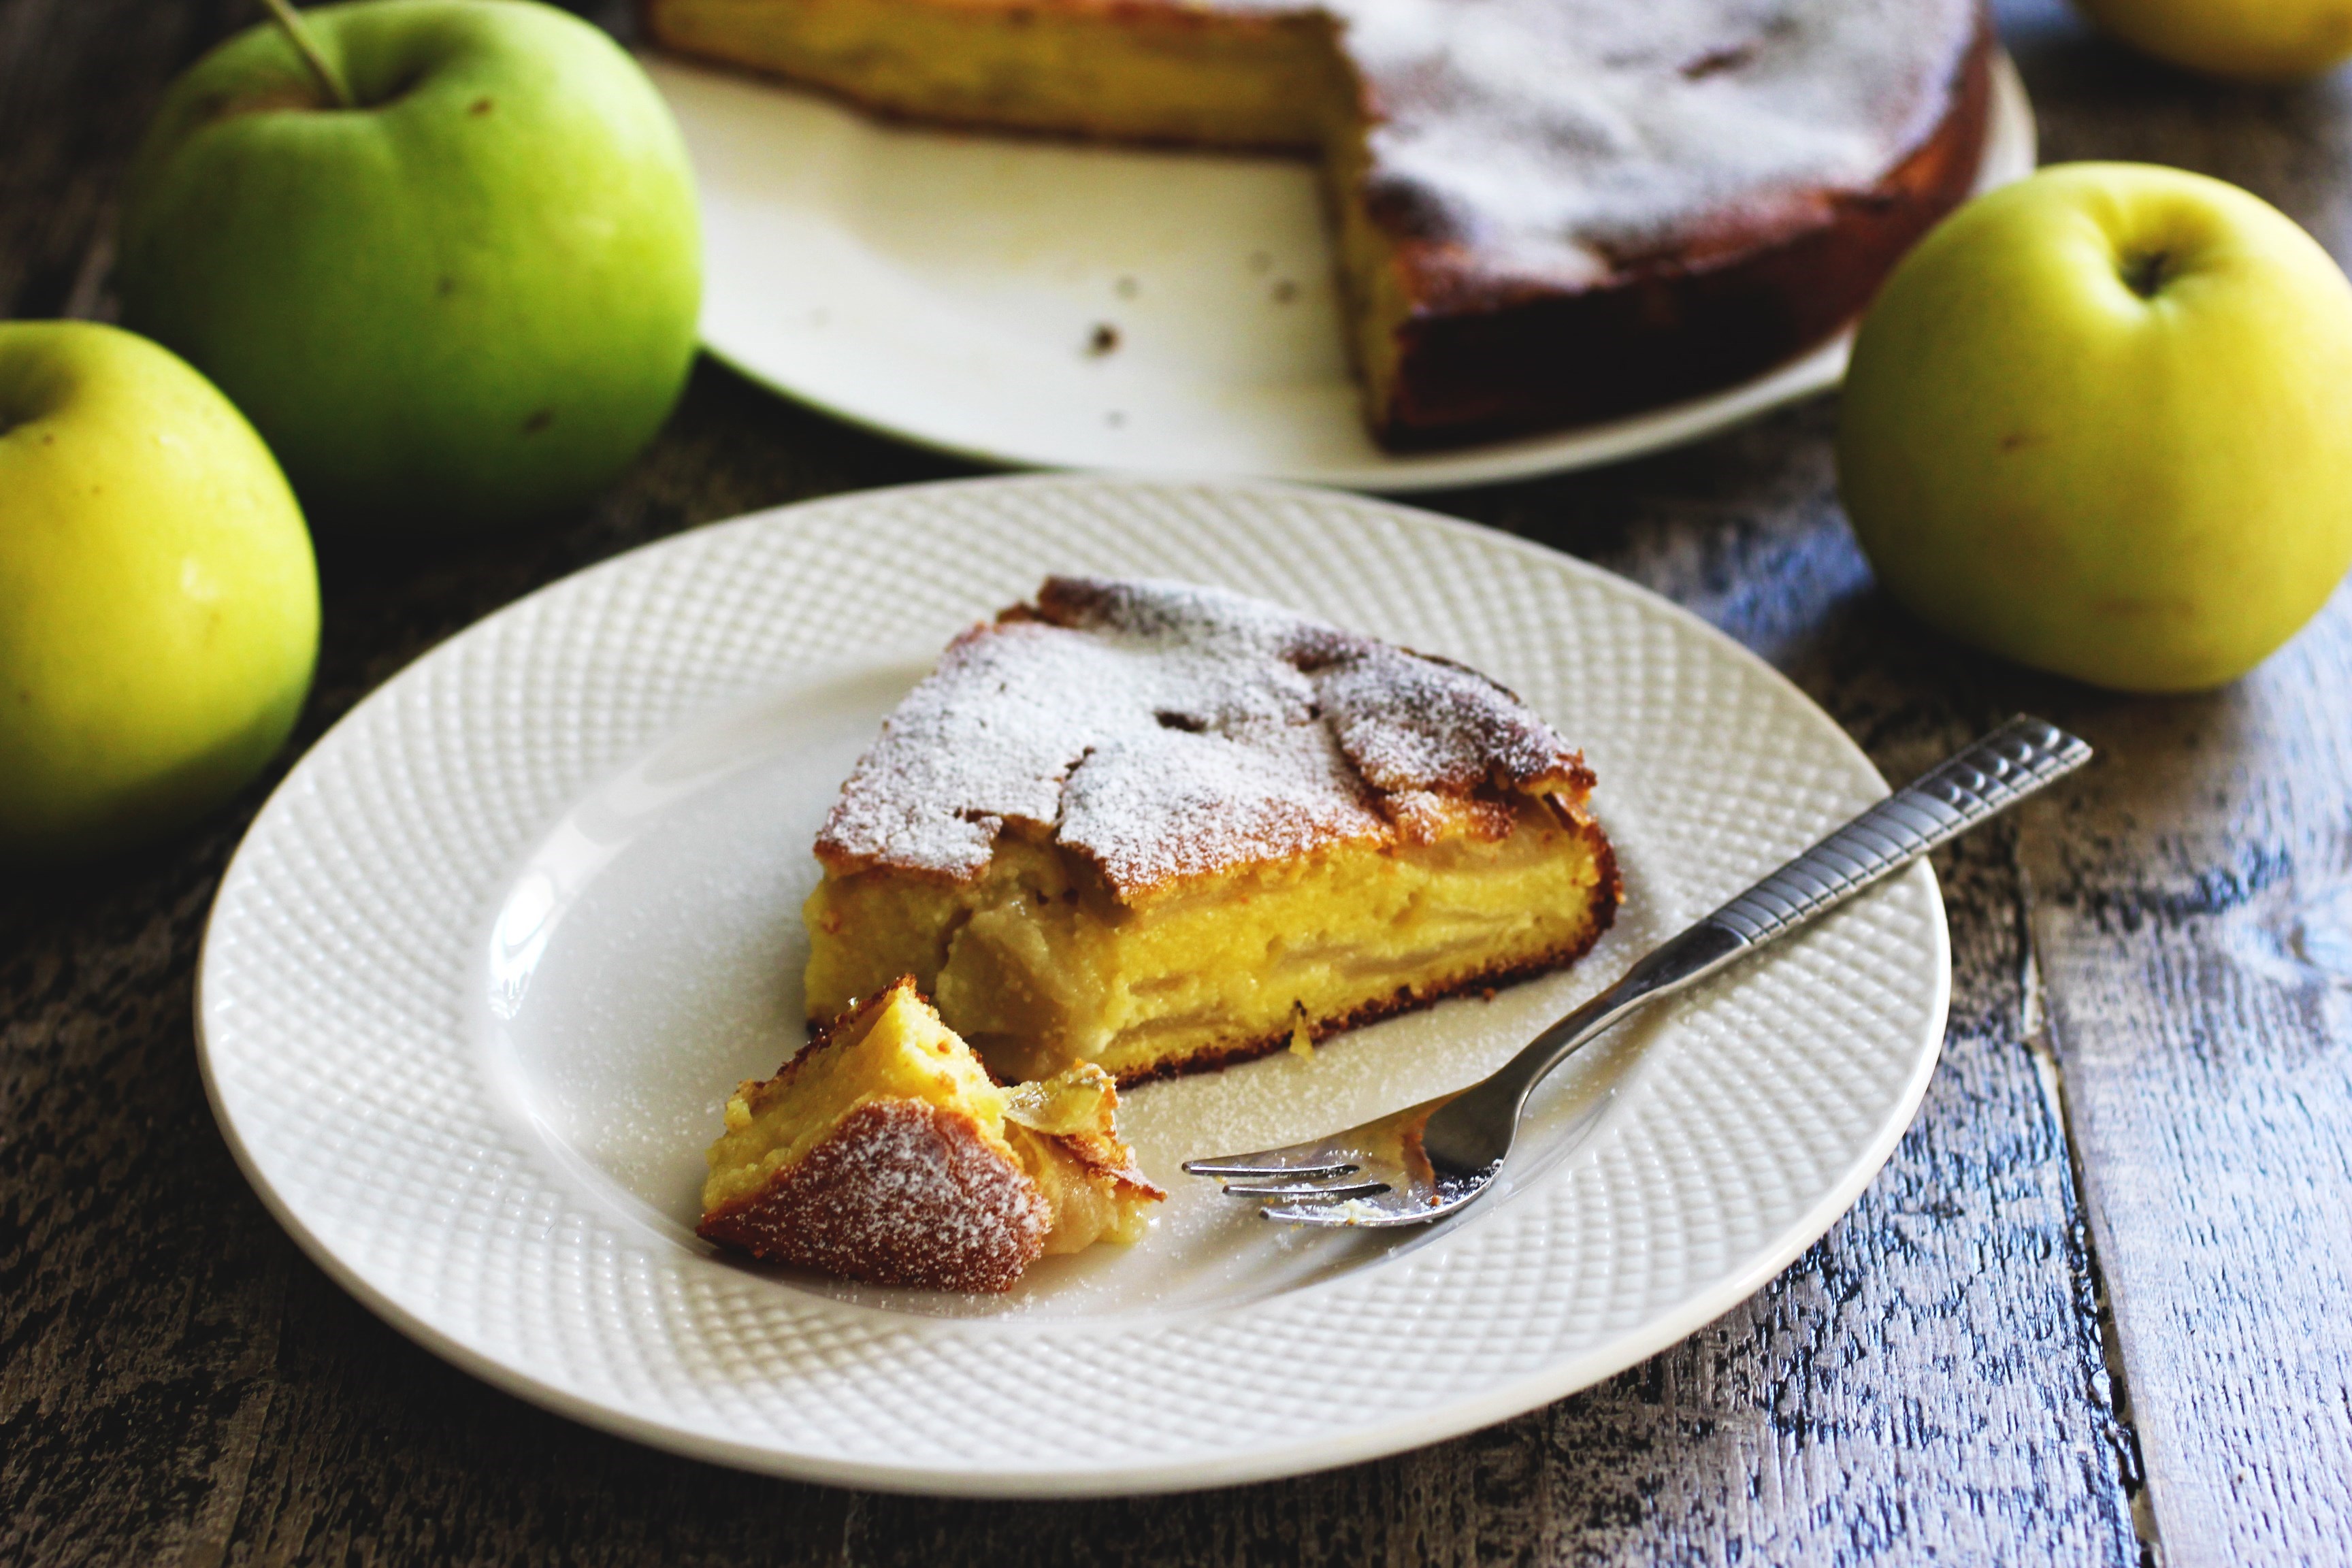 Пирог с яблоками и грушами – рецепт с фото